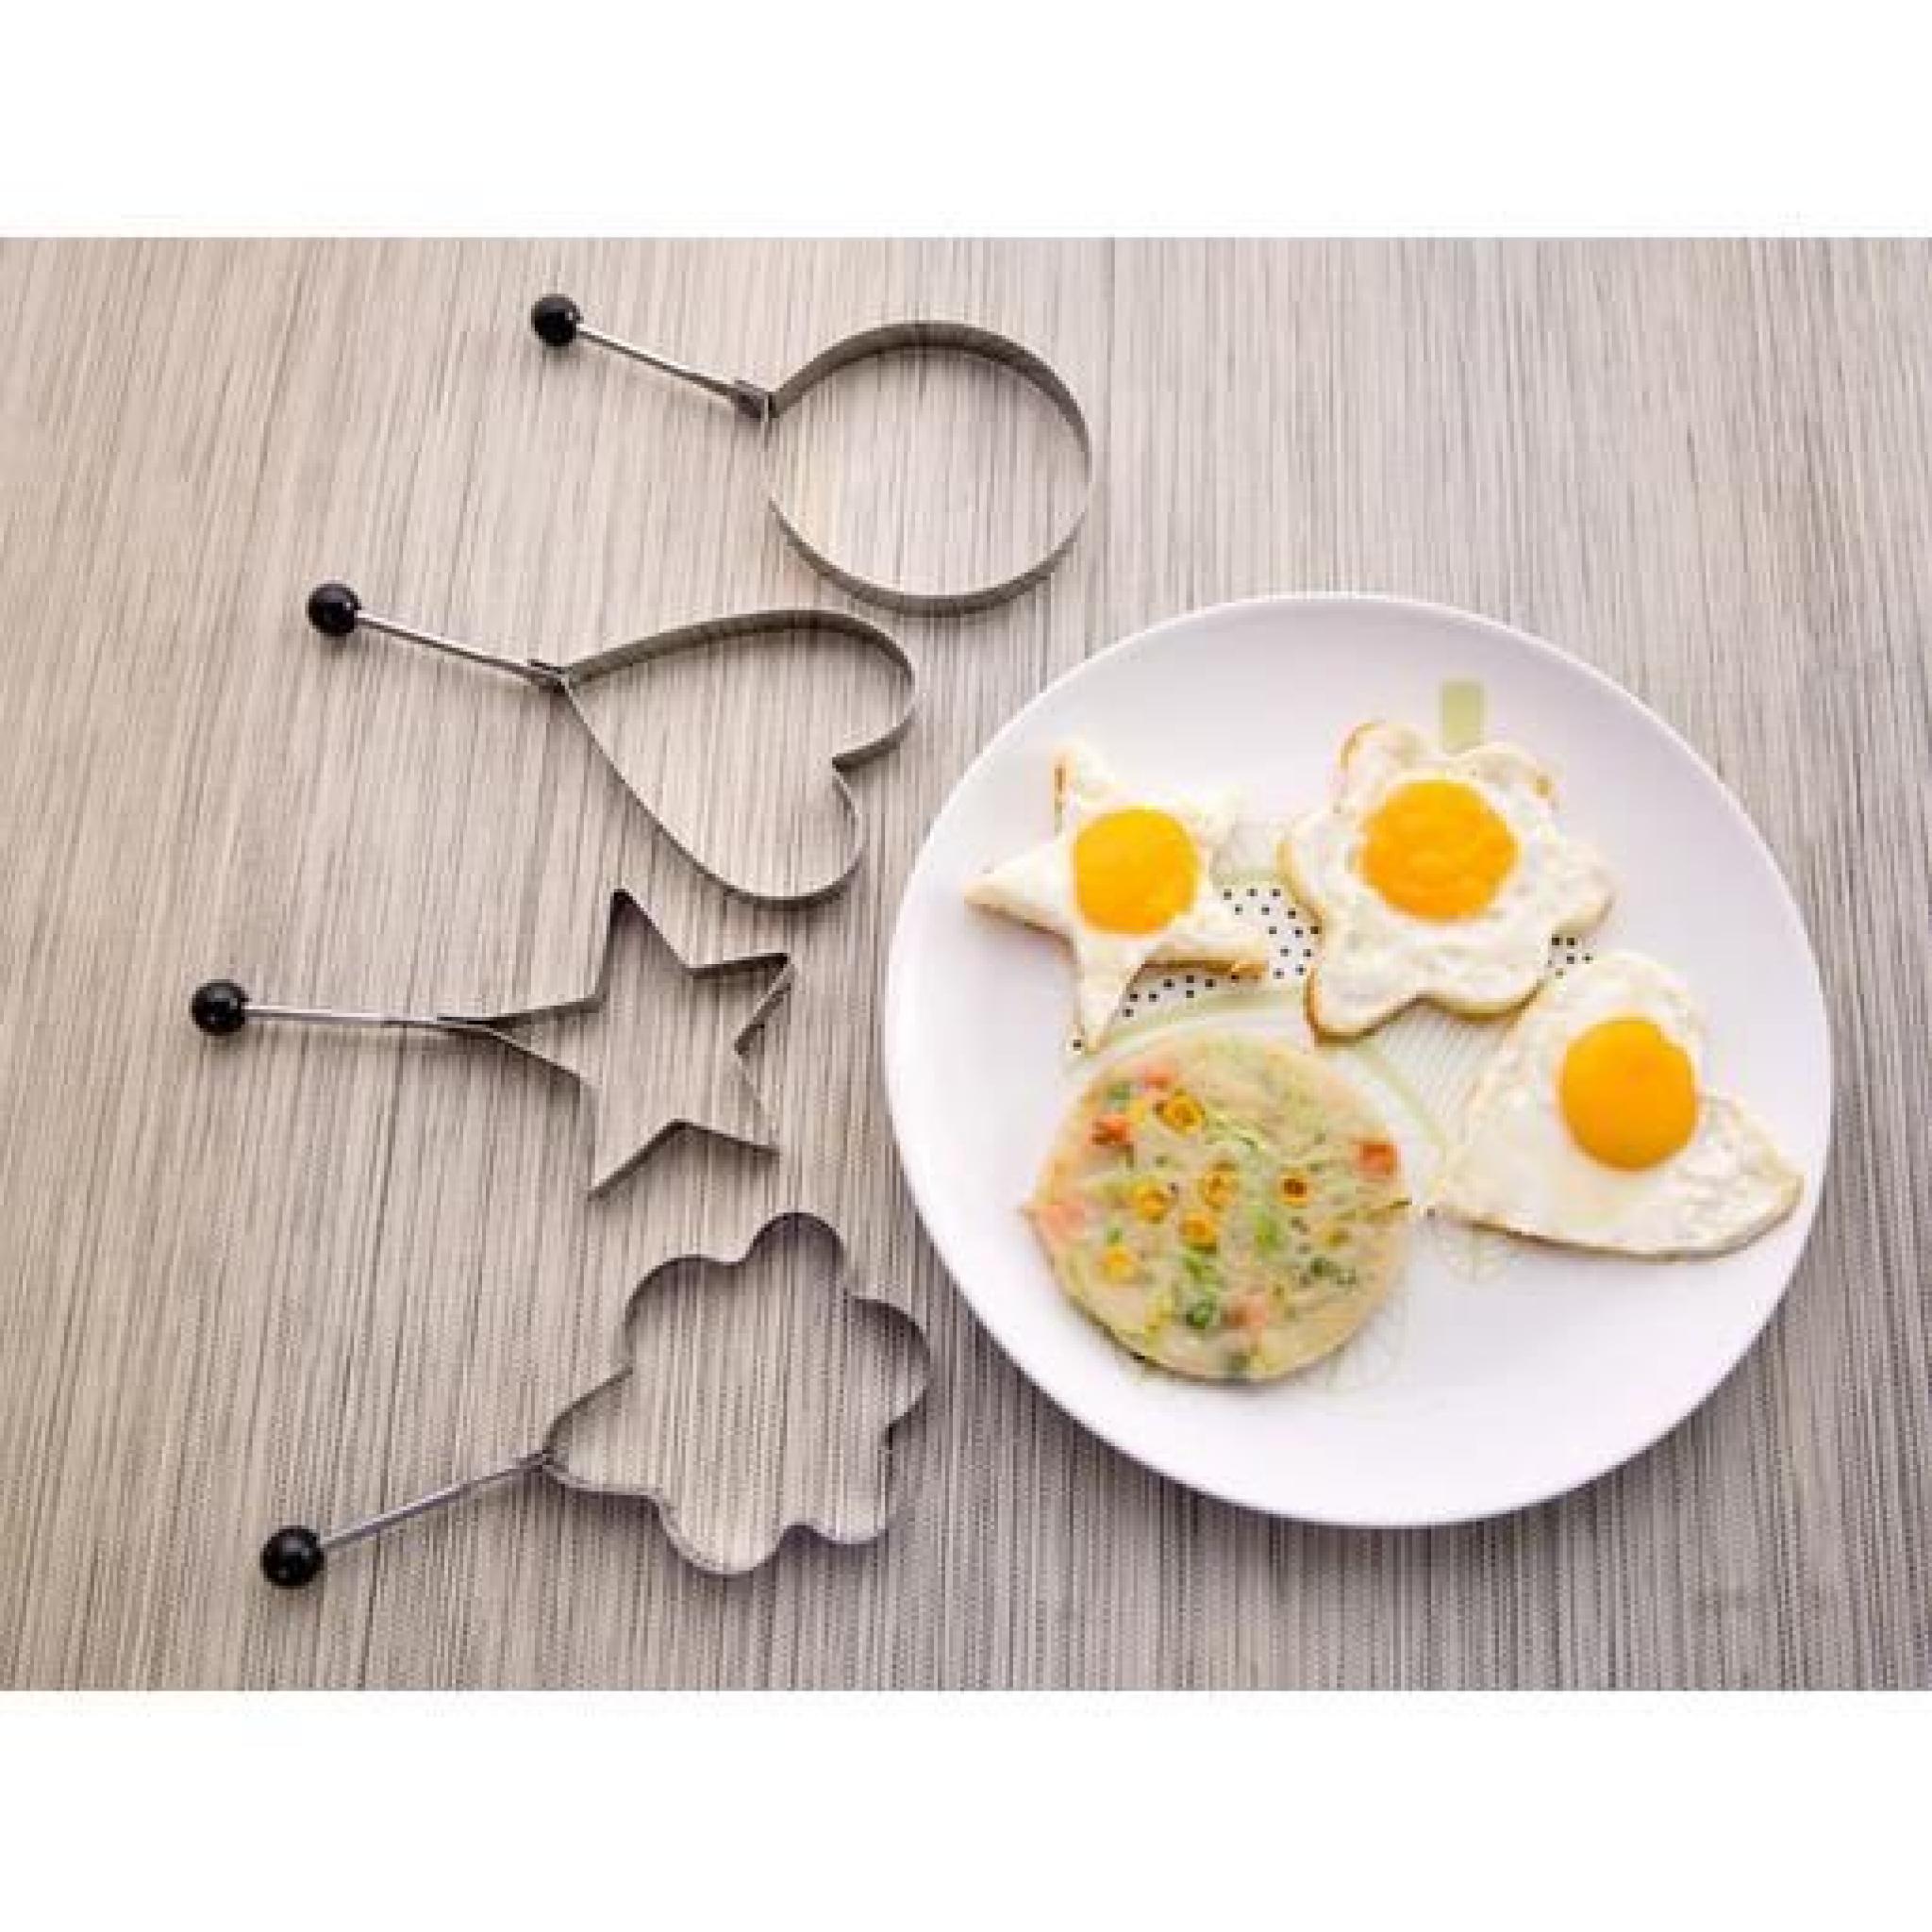 4×Moule Oeufs Omelettes Crêpes Inox Cuisine Outil Poêle Emporte Pièce Forme Coeur,pentacle,cercle,fleur pas cher